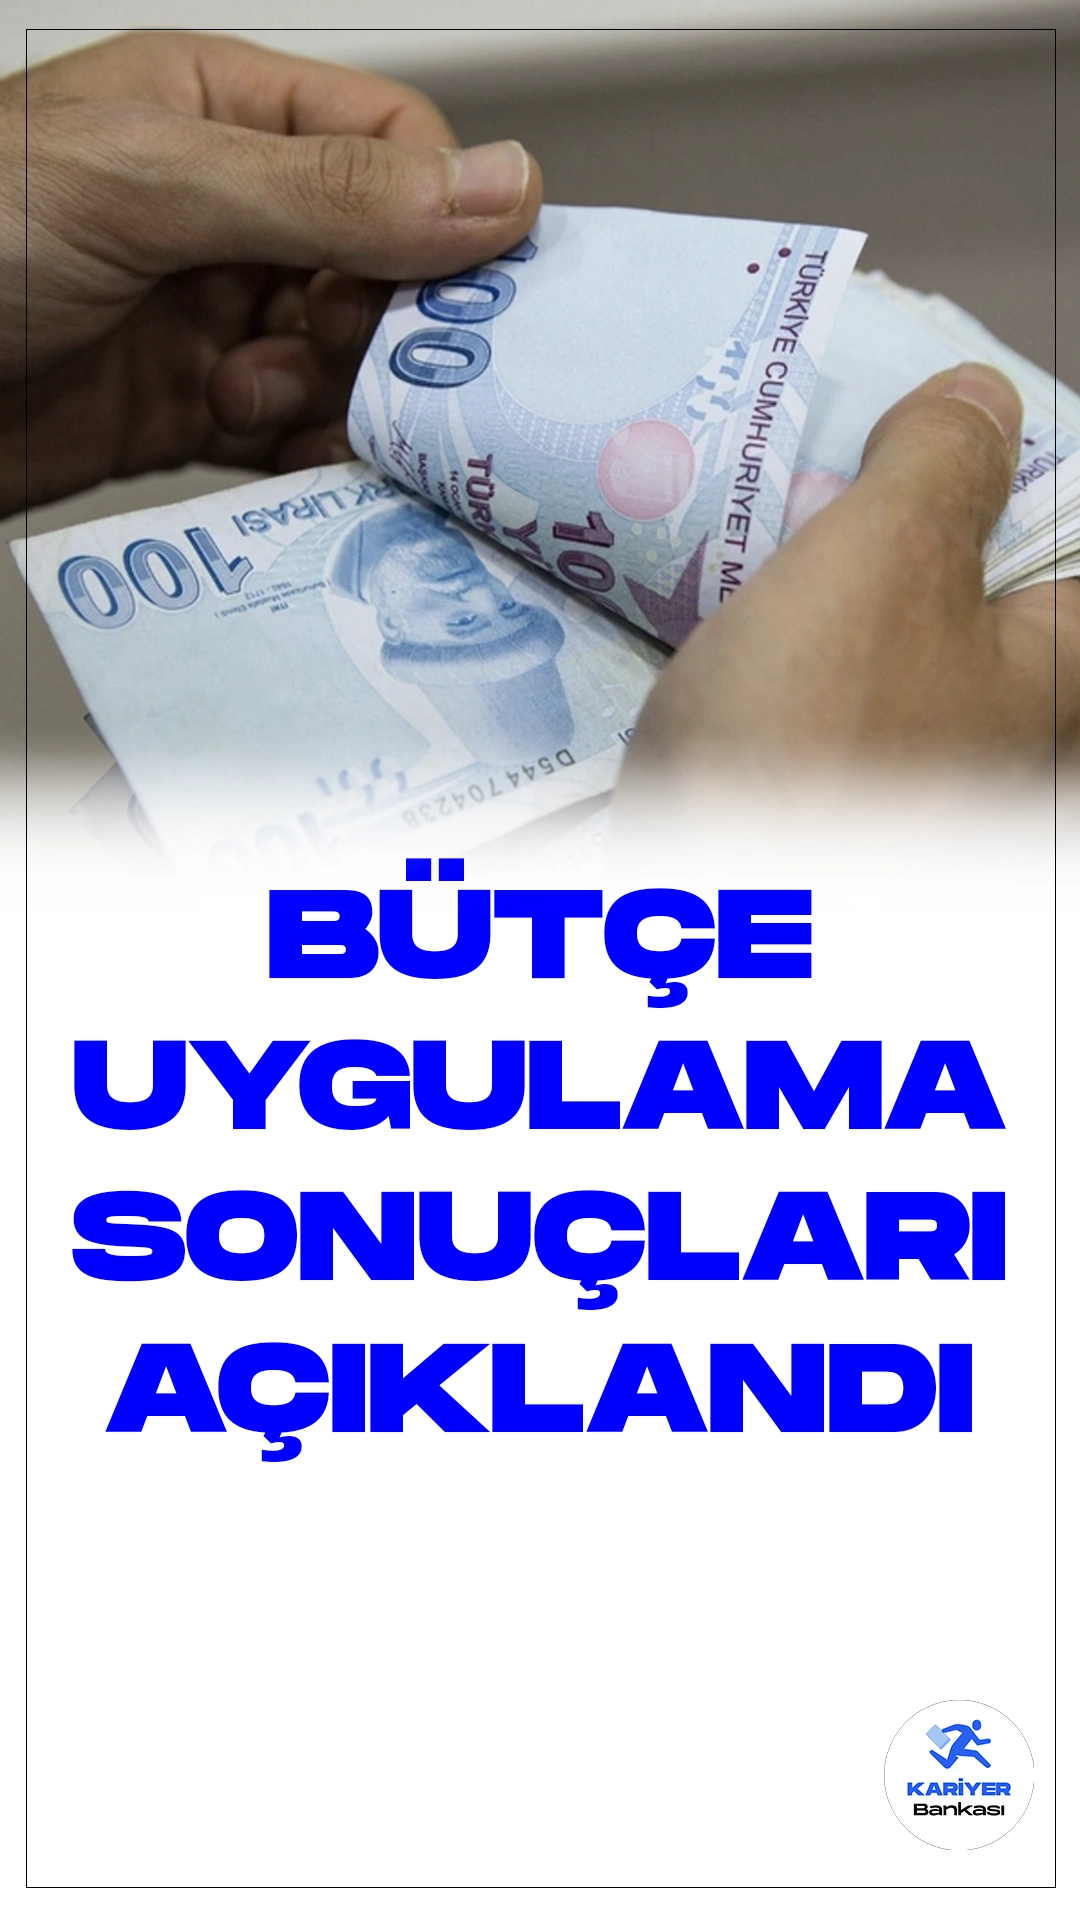 Bütçe Uygulama Sonuçları Açıklandı.Türkiye'nin merkezi yönetim bütçe gelirleri, kasım ayında oldukça etkileyici bir performans sergileyerek 746 milyar 810 milyon lira seviyesine ulaştı. Buna karşılık, bütçe giderleri 671 milyar 183 milyon lira olarak kaydedildi. Bu dönemde elde edilen bütçe fazlası ise 75,6 milyar lira oldu.